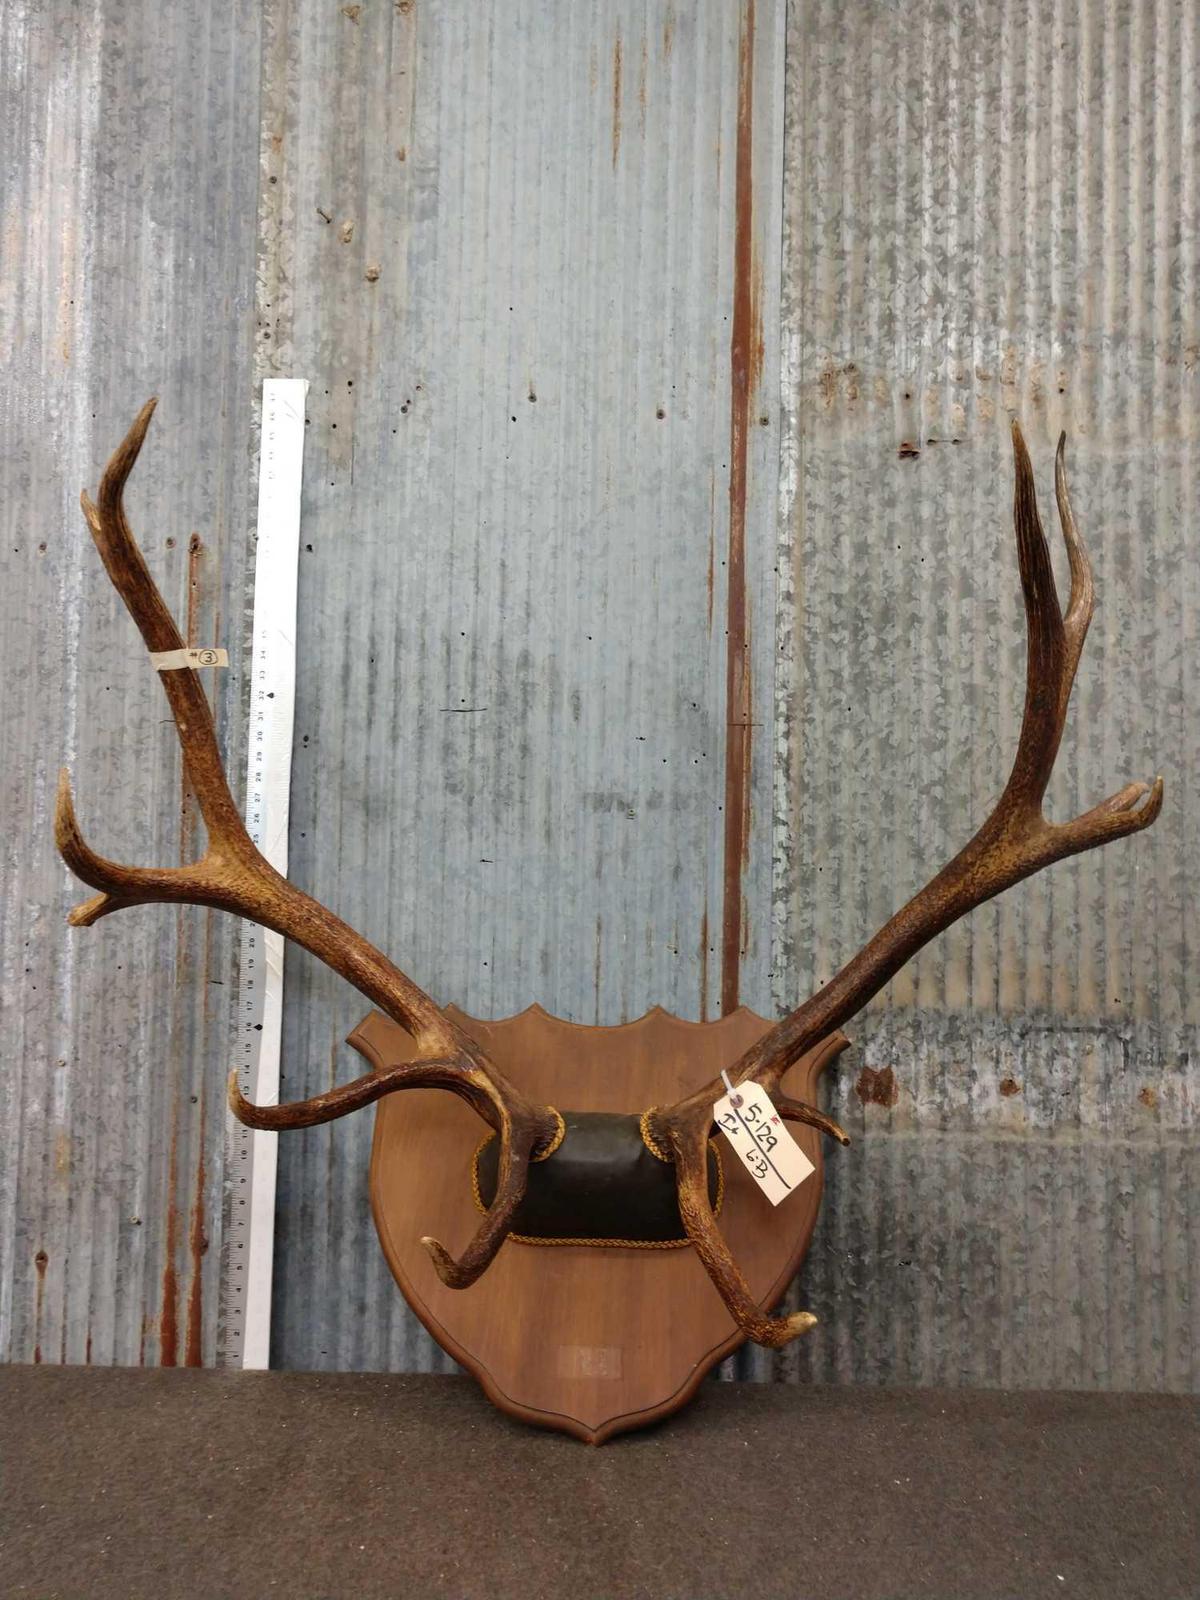 6x6 Elk Antlers On Skull Plate